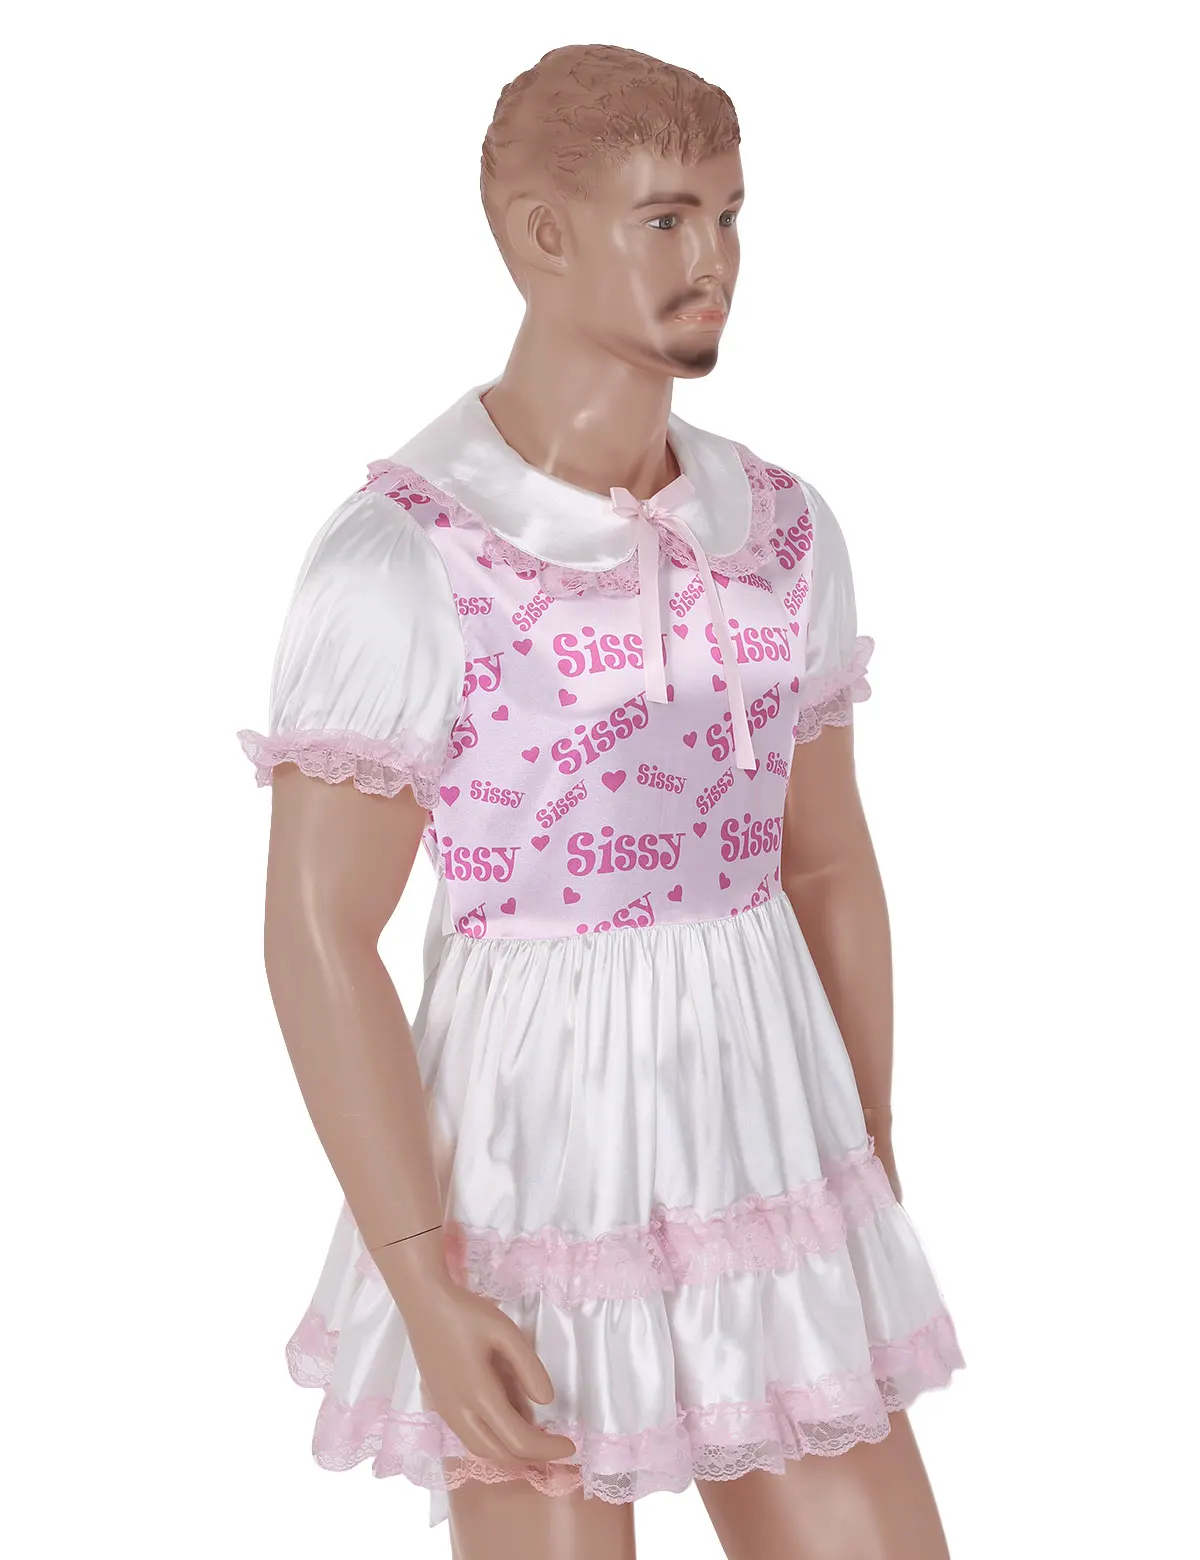 MSemis, мужское платье, блестящее, атласное, кукольный воротник, кружево, пышные рукава, сексуальное нижнее белье, платье для трансвеститов, Клубная одежда, костюм